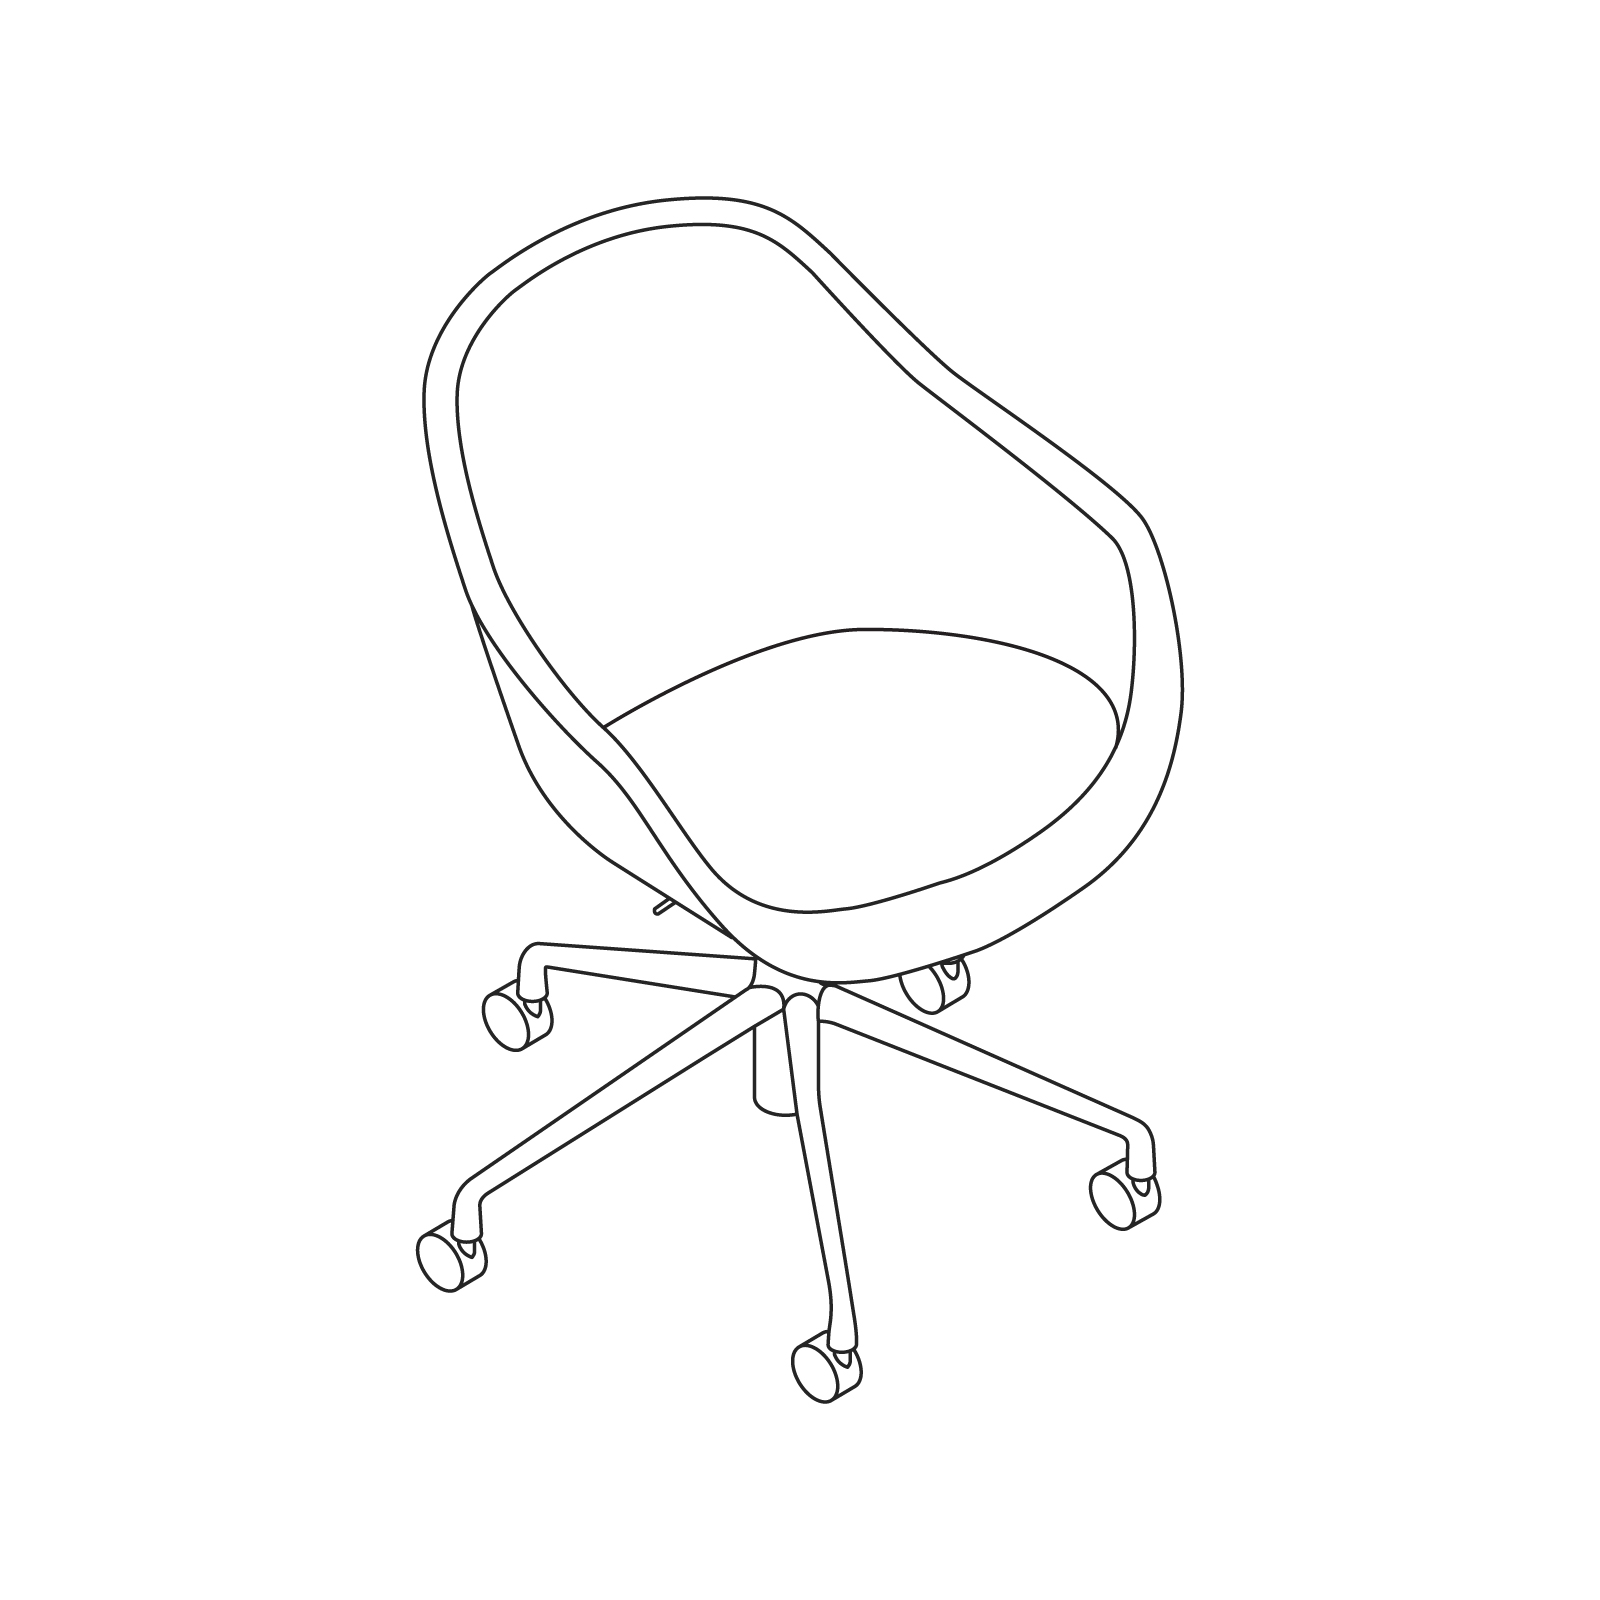 Um desenho de linha - About A Chair – Encosto alto – Com braços – Base com rodízios 5 estrelas (AAC153, AAC153S, AAC153SD)